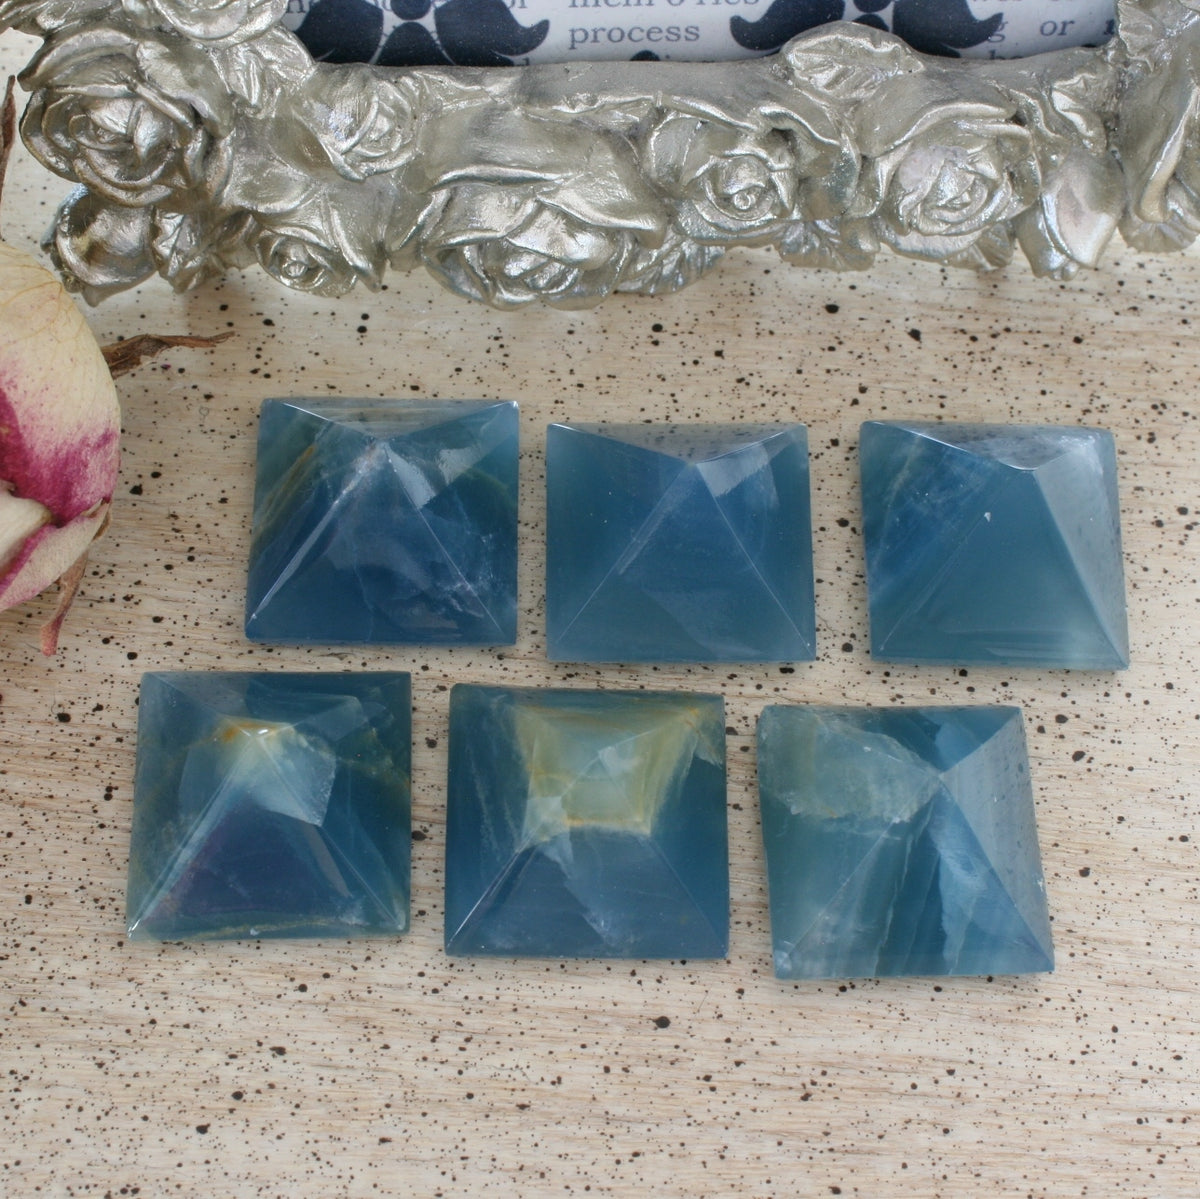 Blue Calcite / Blue Onyx Pyramid from Argentina, also called Lemurian Aquatine Calcite, LGPY8